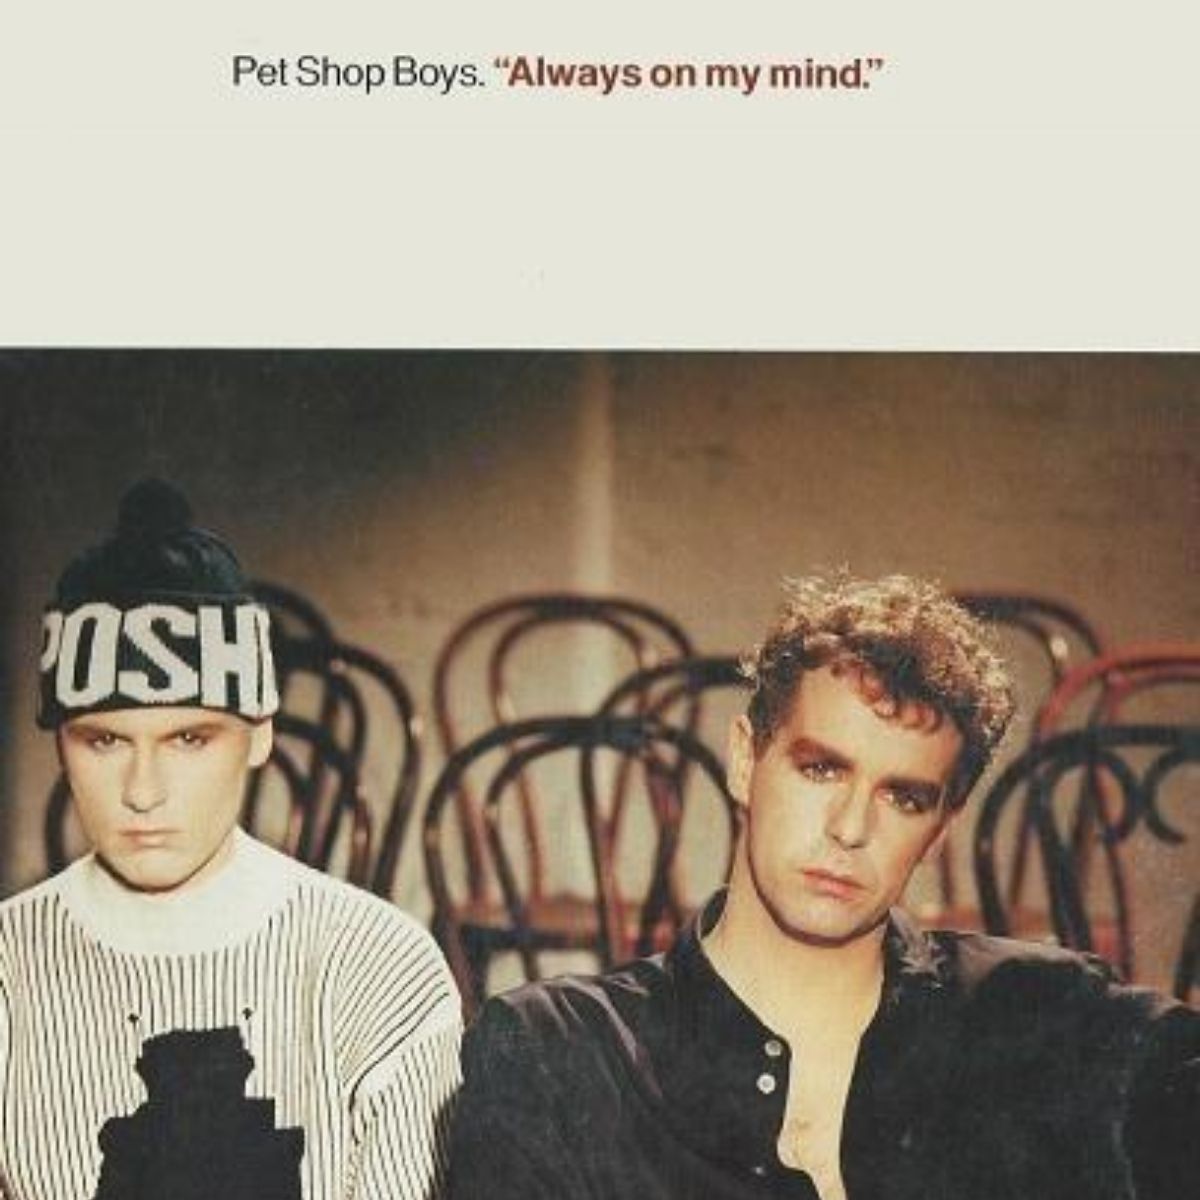 Couverture du single des Pet Shop Boys "Always on My Mind".